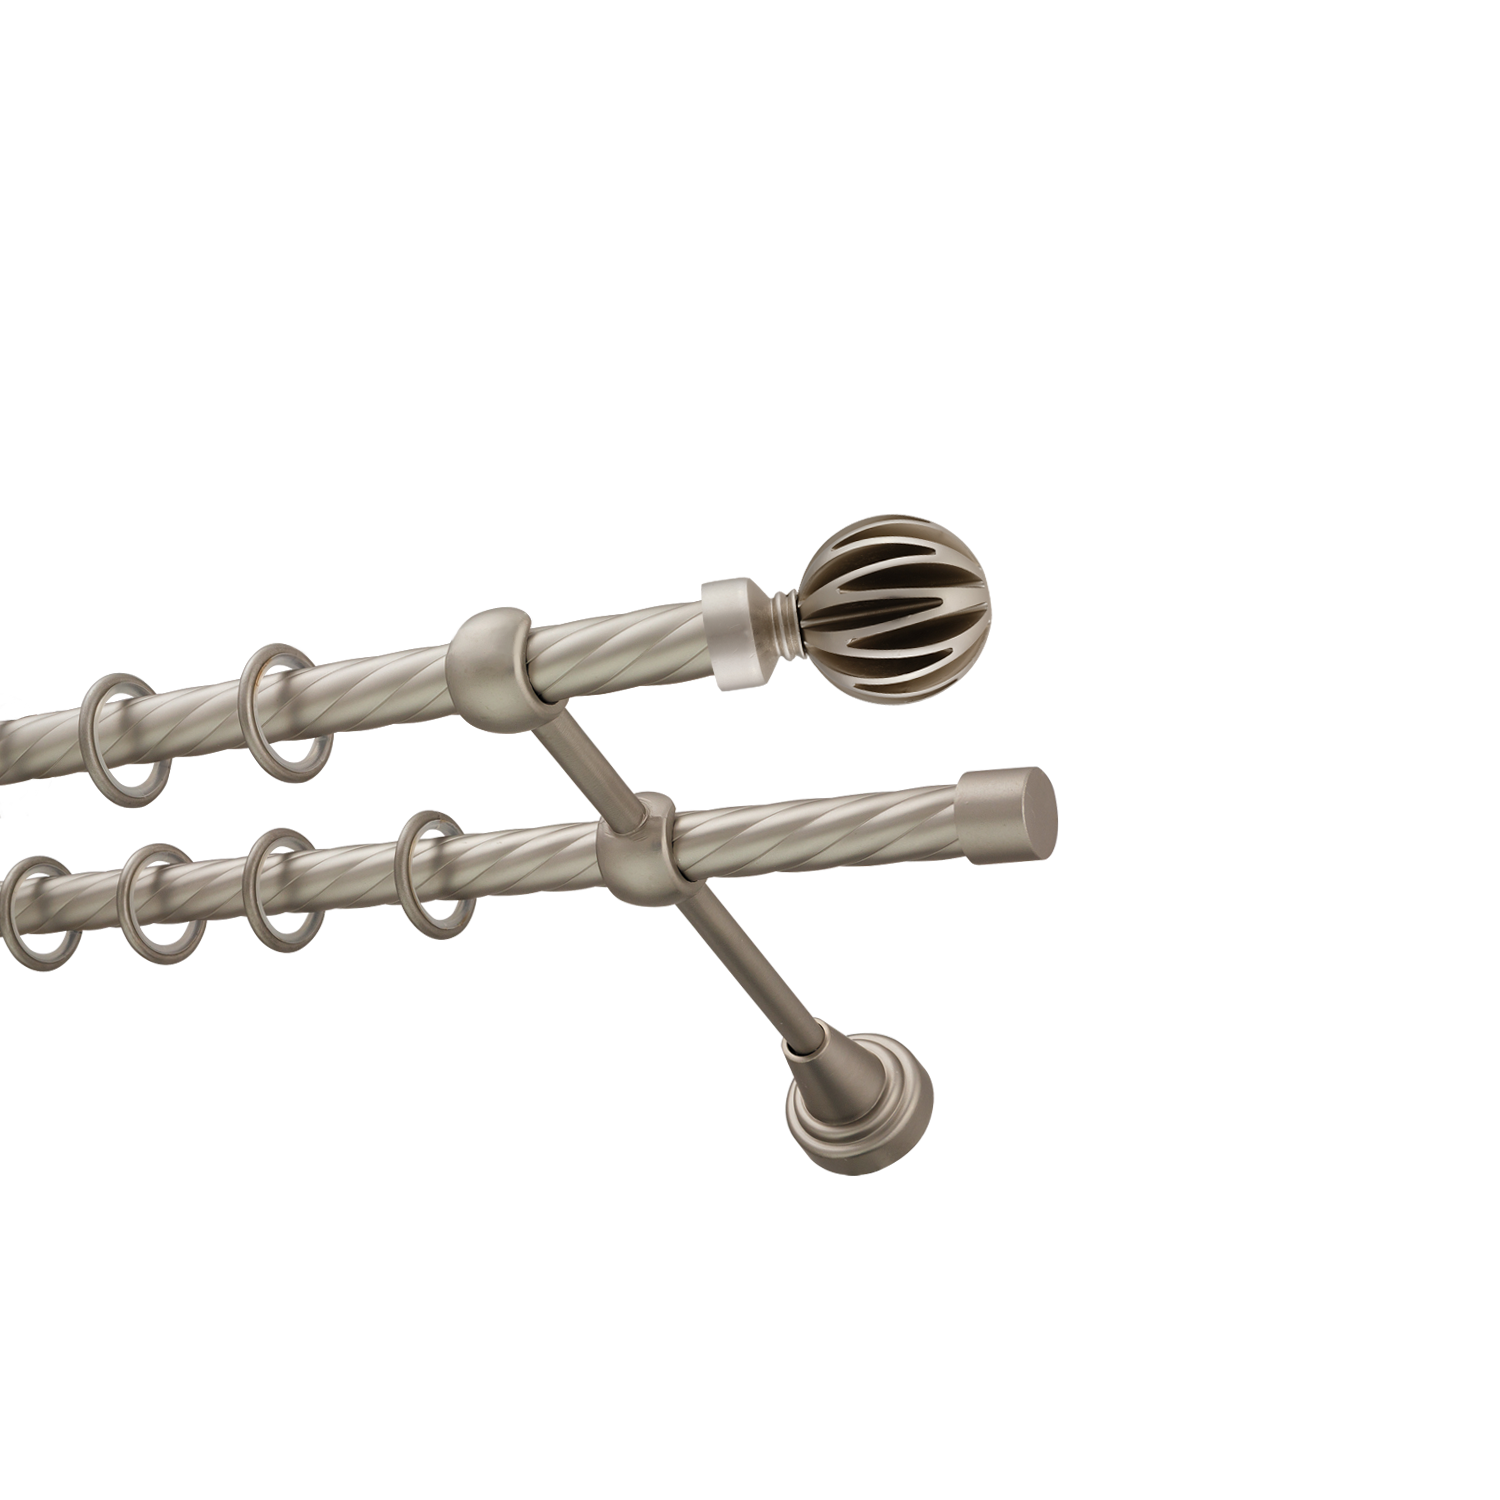 Металлический карниз для штор Шафран, двухрядный 16/16 мм, сталь, витая штанга, длина 140 см - фото Wikidecor.ru